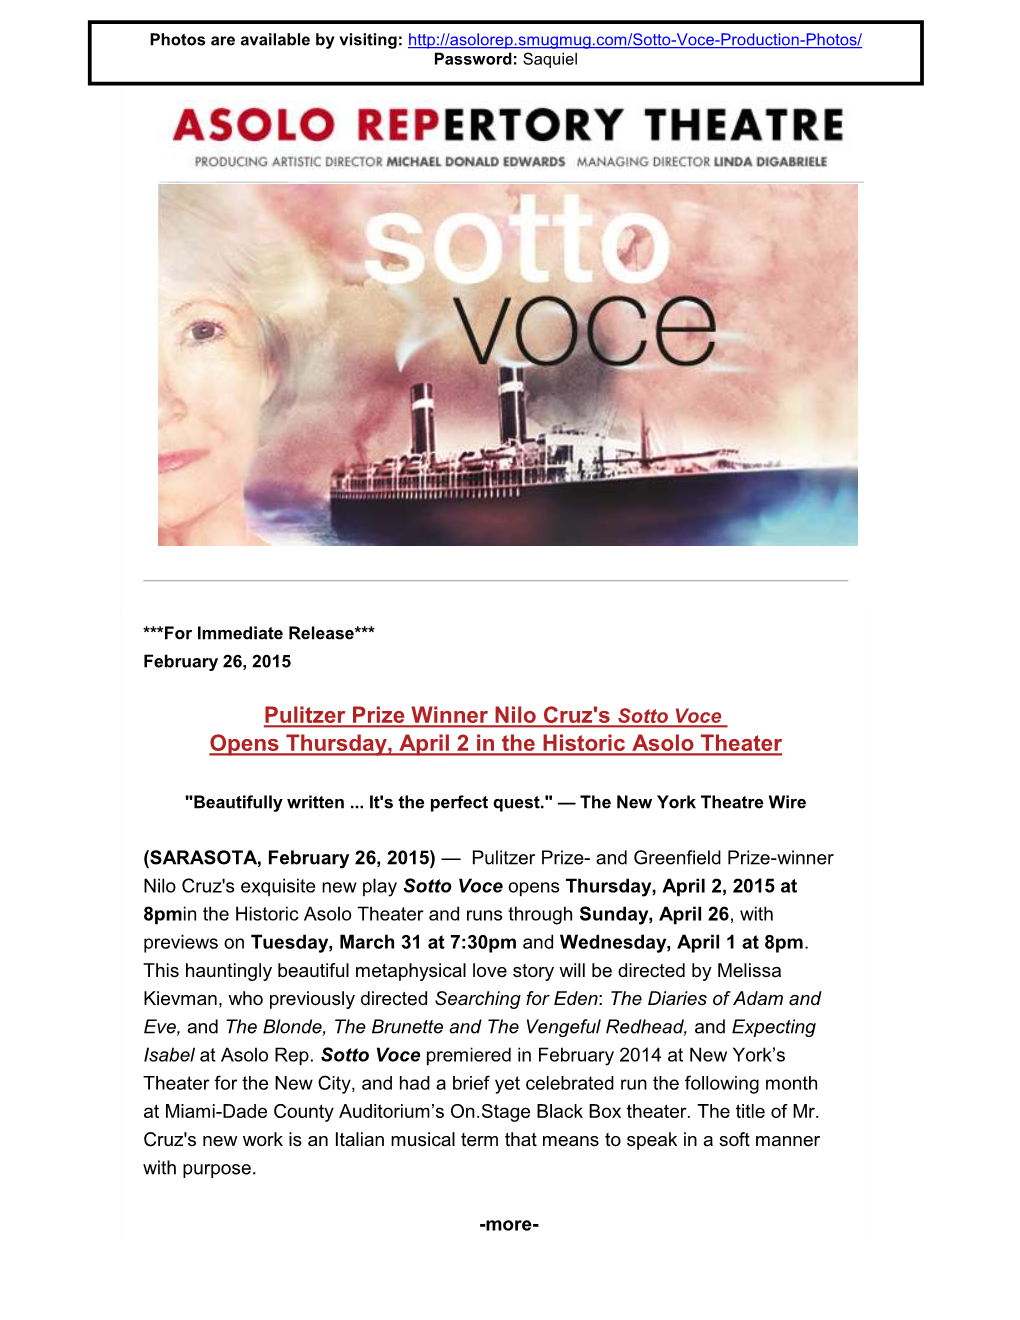 Pulitzer Prize Winner Nilo Cruz's Sotto Voce Opens Thursday, April 2 in the Historic Asolo Theater